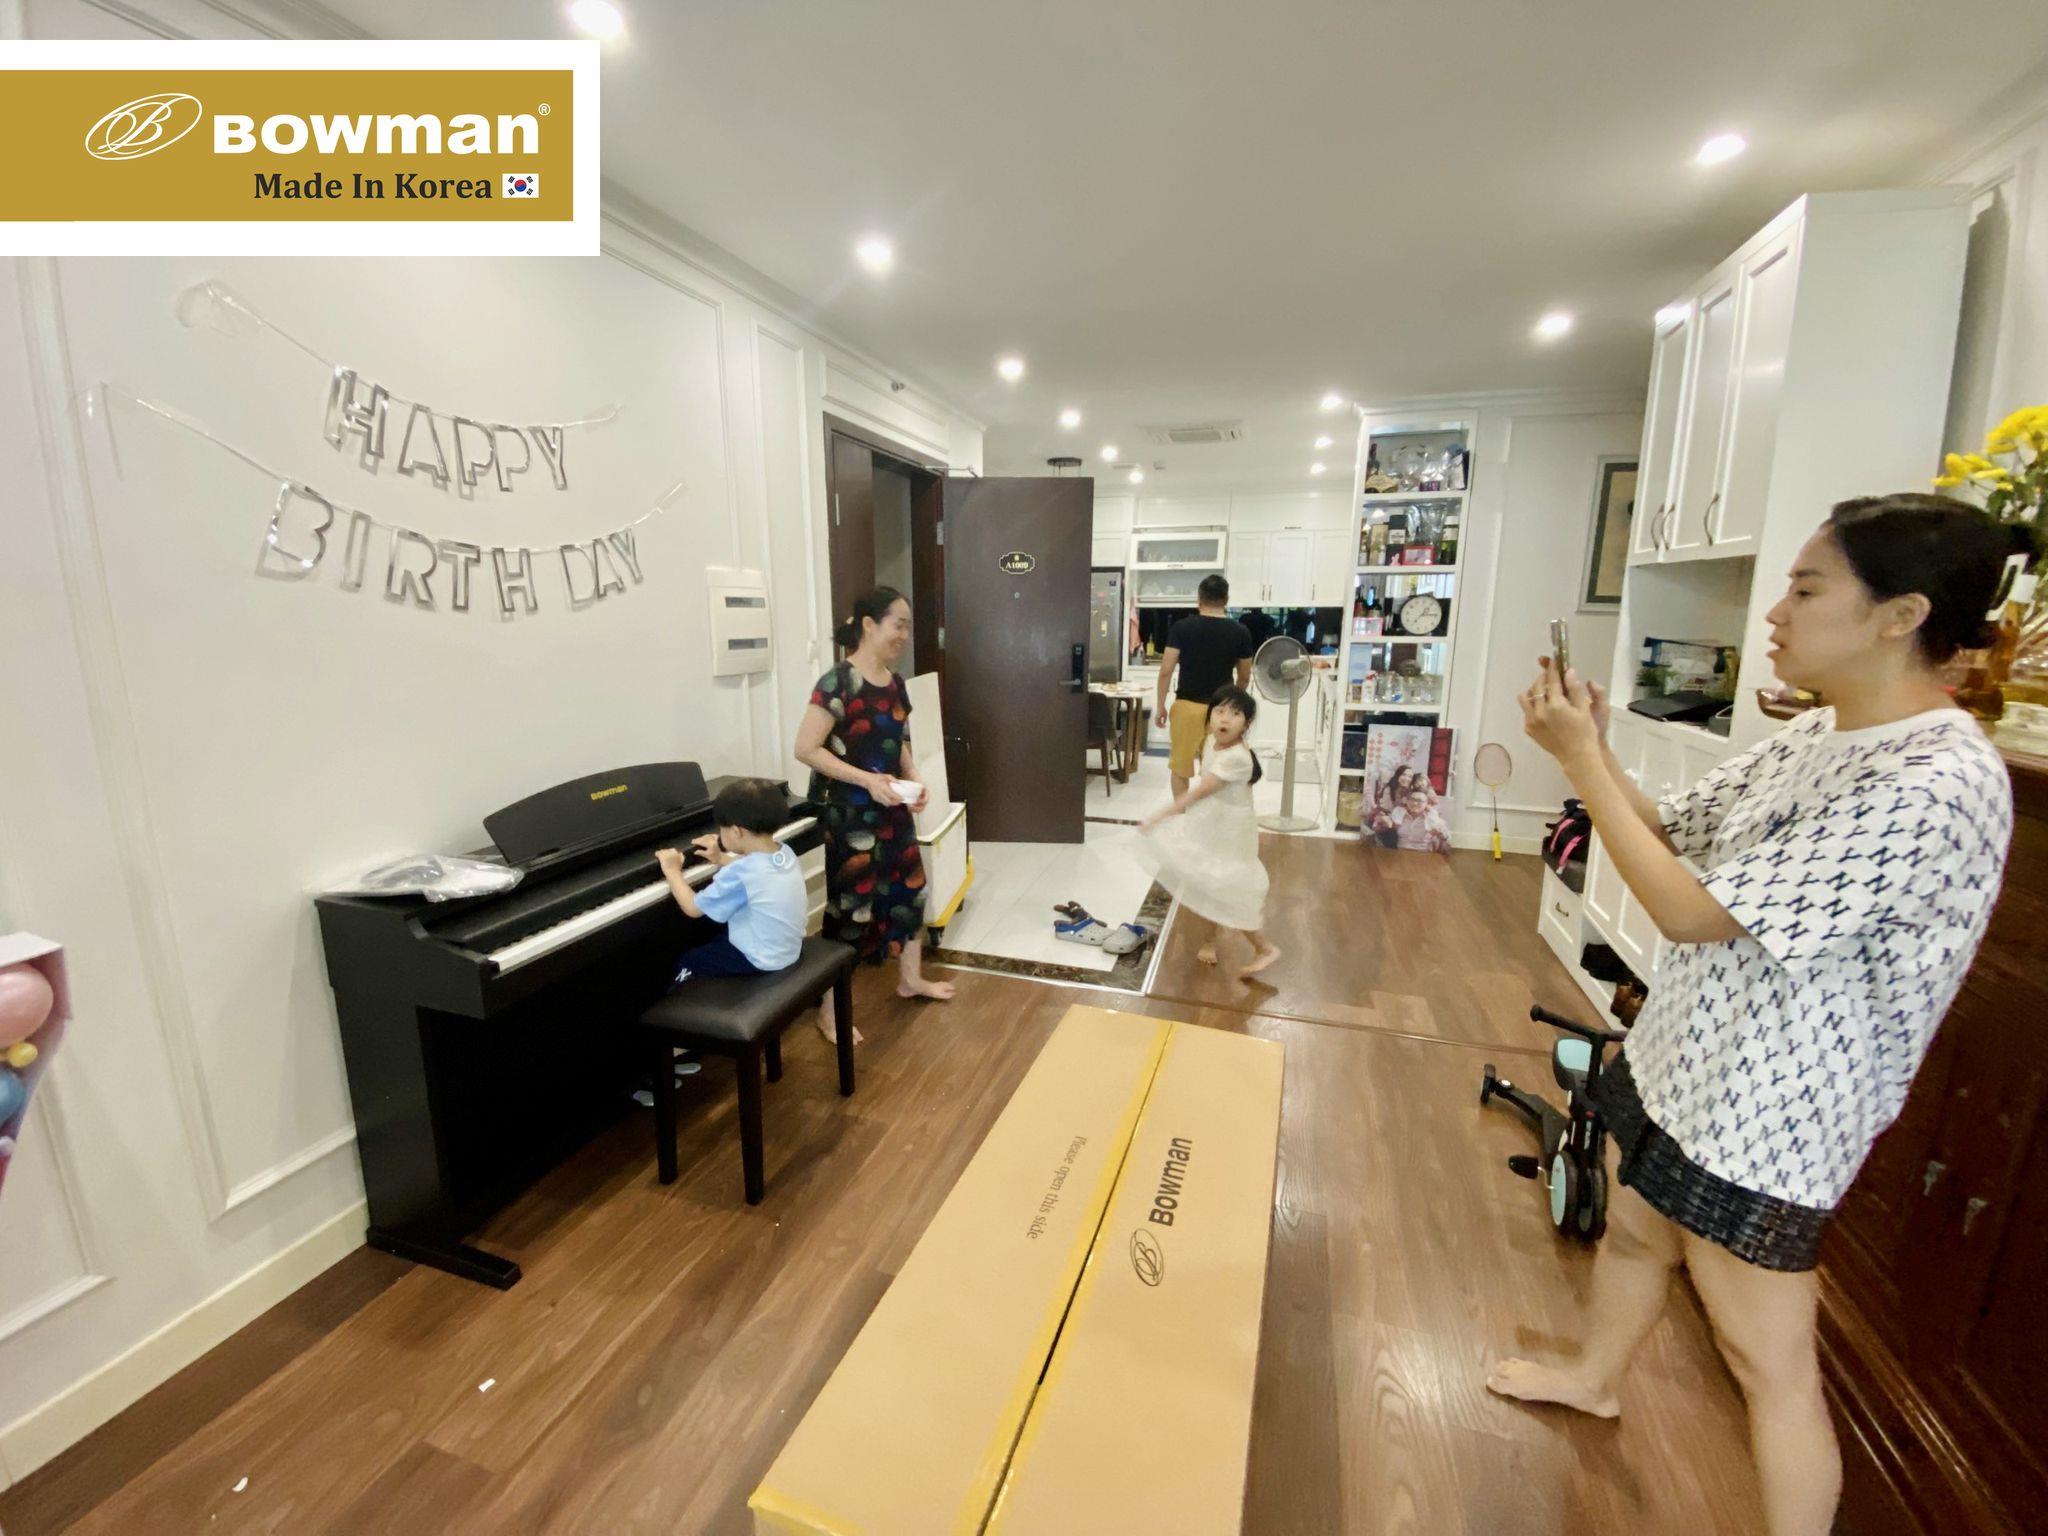 Bowman Piano - 1 món quà sinh nhật ý nghĩa